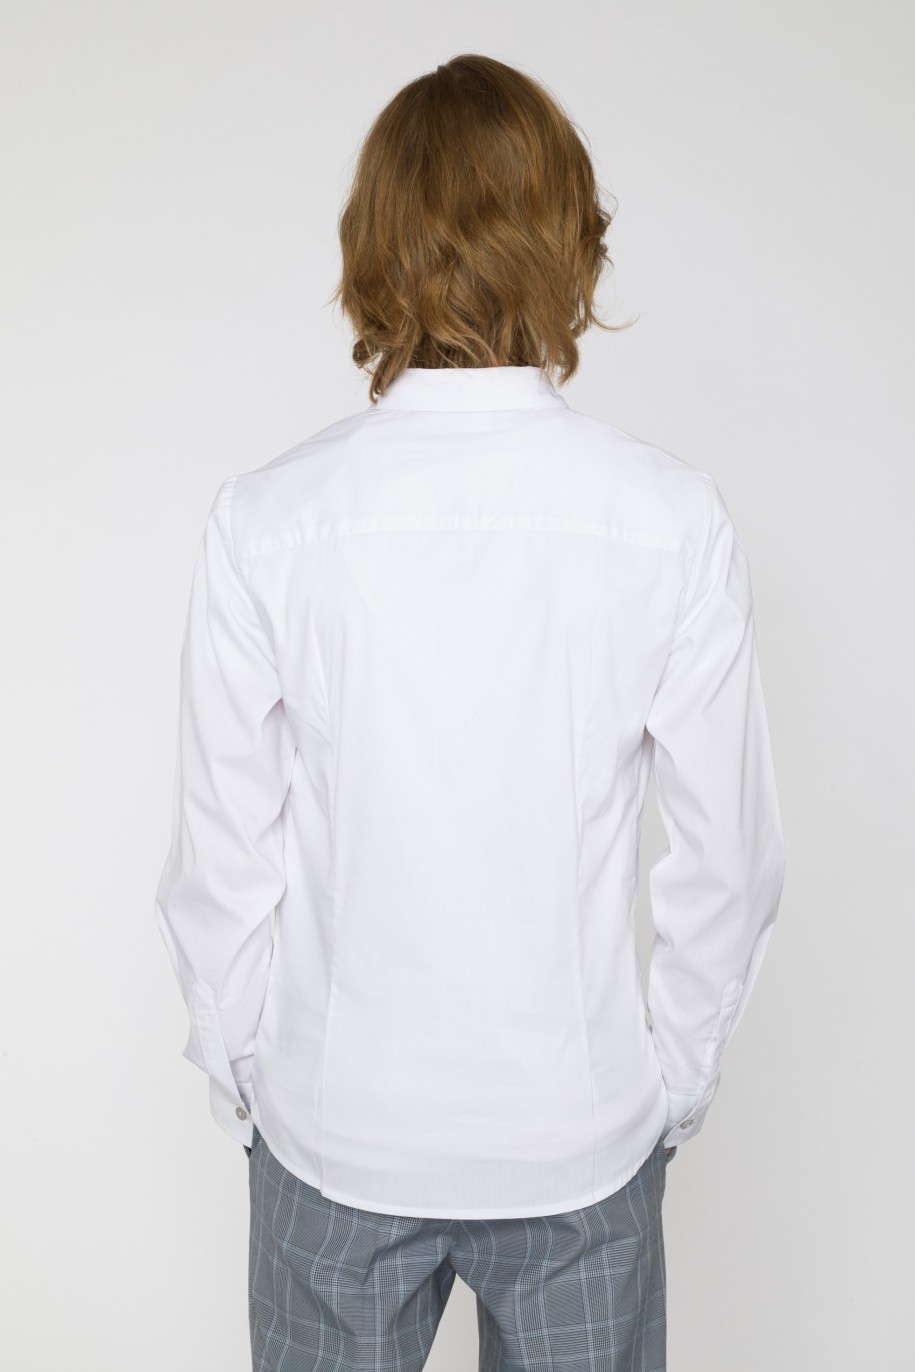 Klasyczna biała koszula dla chłopaka - 33858